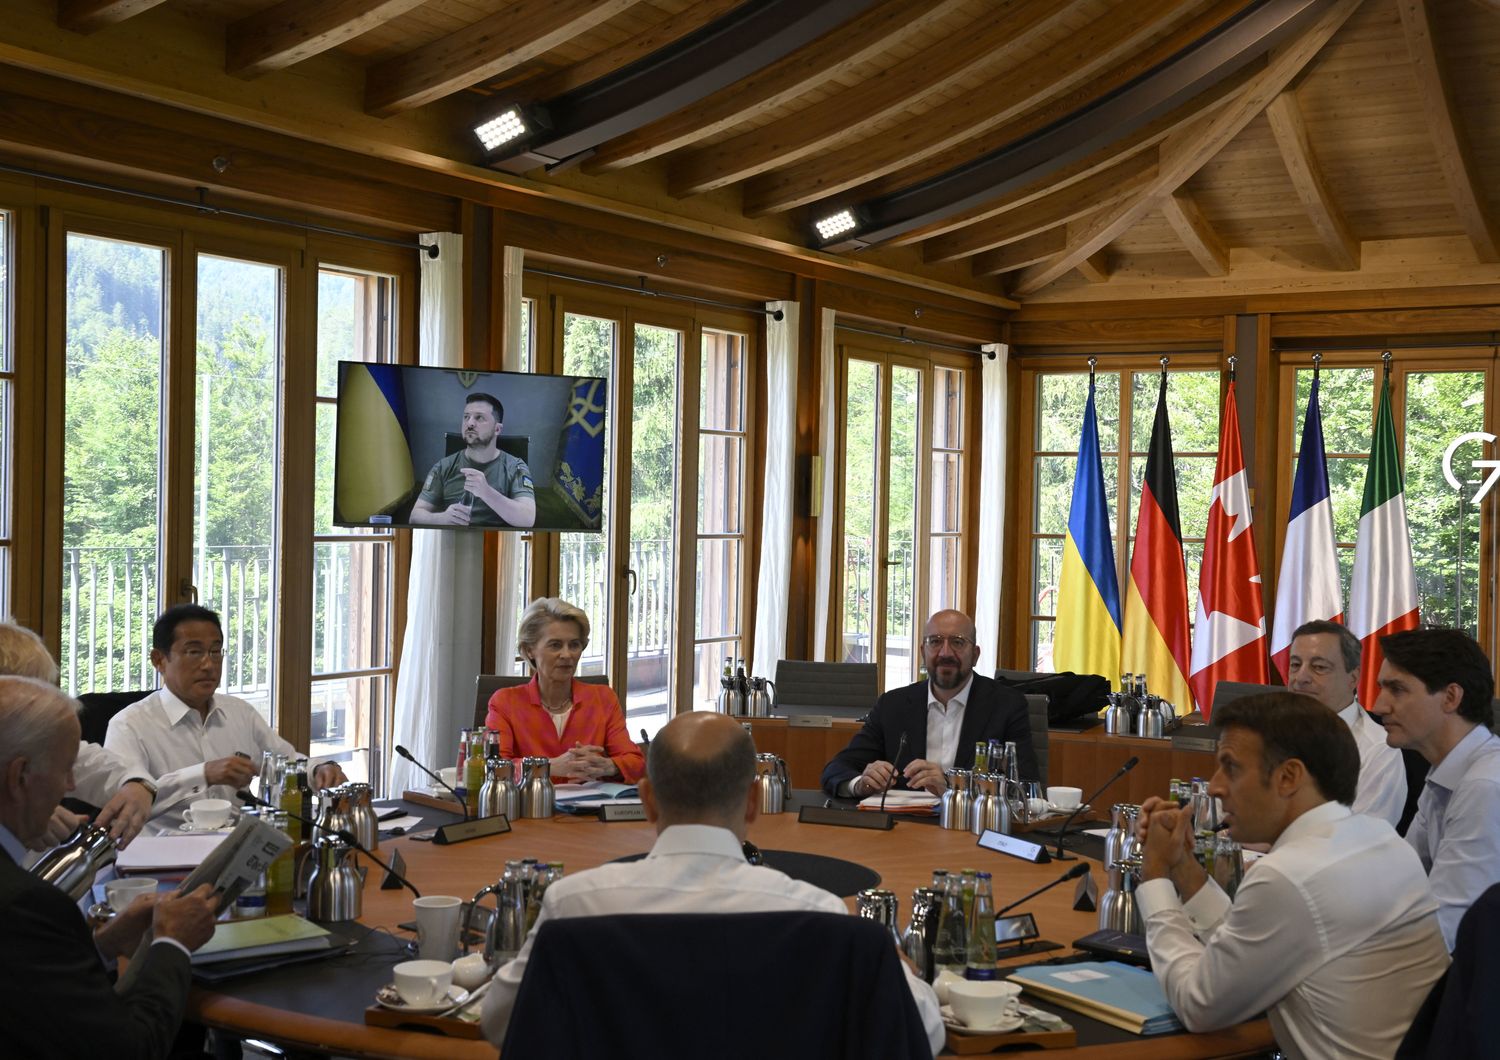 Zelensky collegato da remoto con i leader del G7 a Elmau